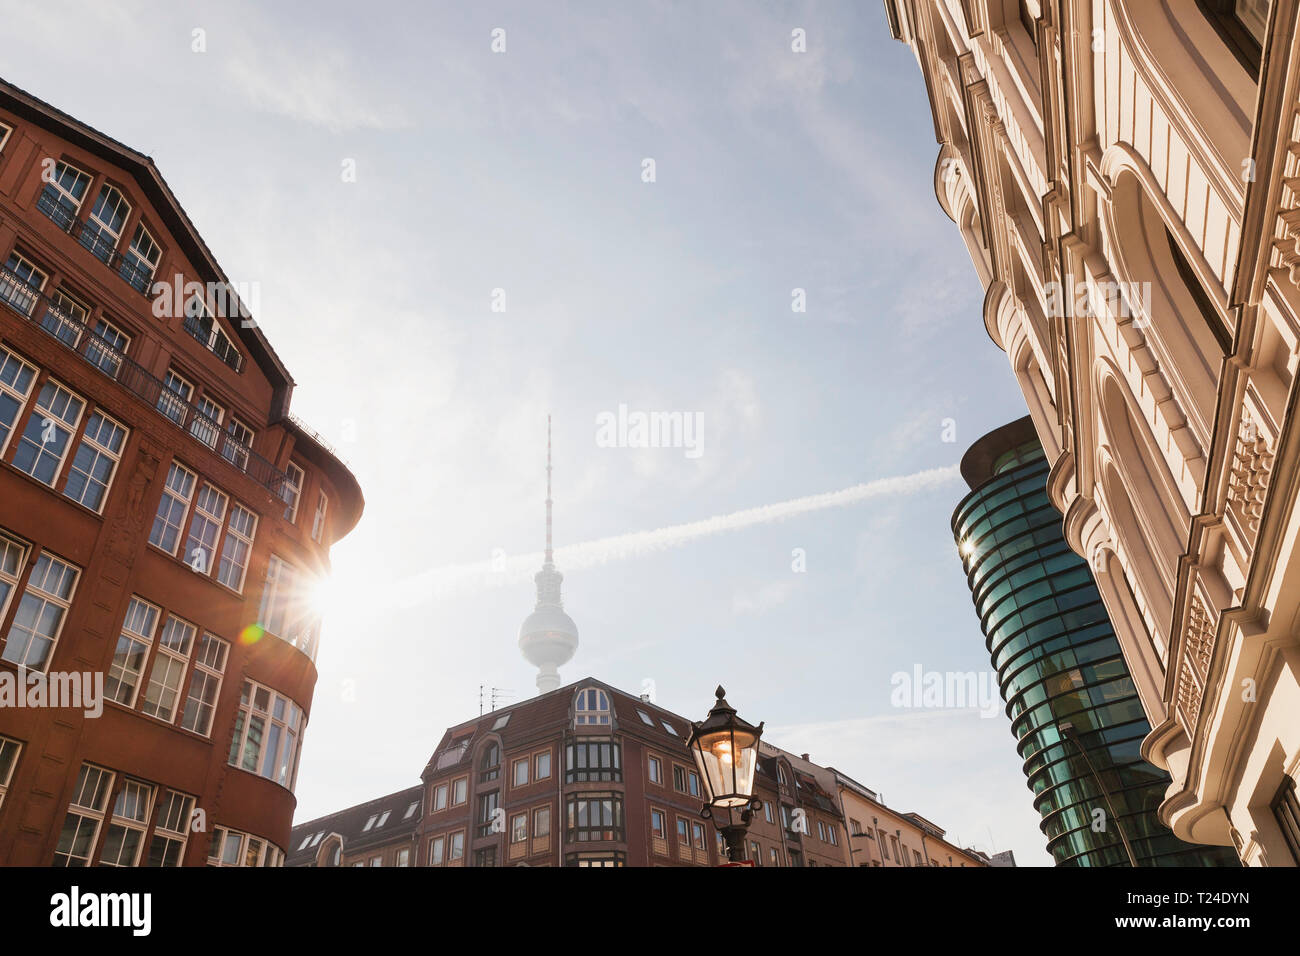 Alemania, Berlín, edificios en Rosenthaler Strasse con torre de televisión en el fondo por la mañana Foto de stock